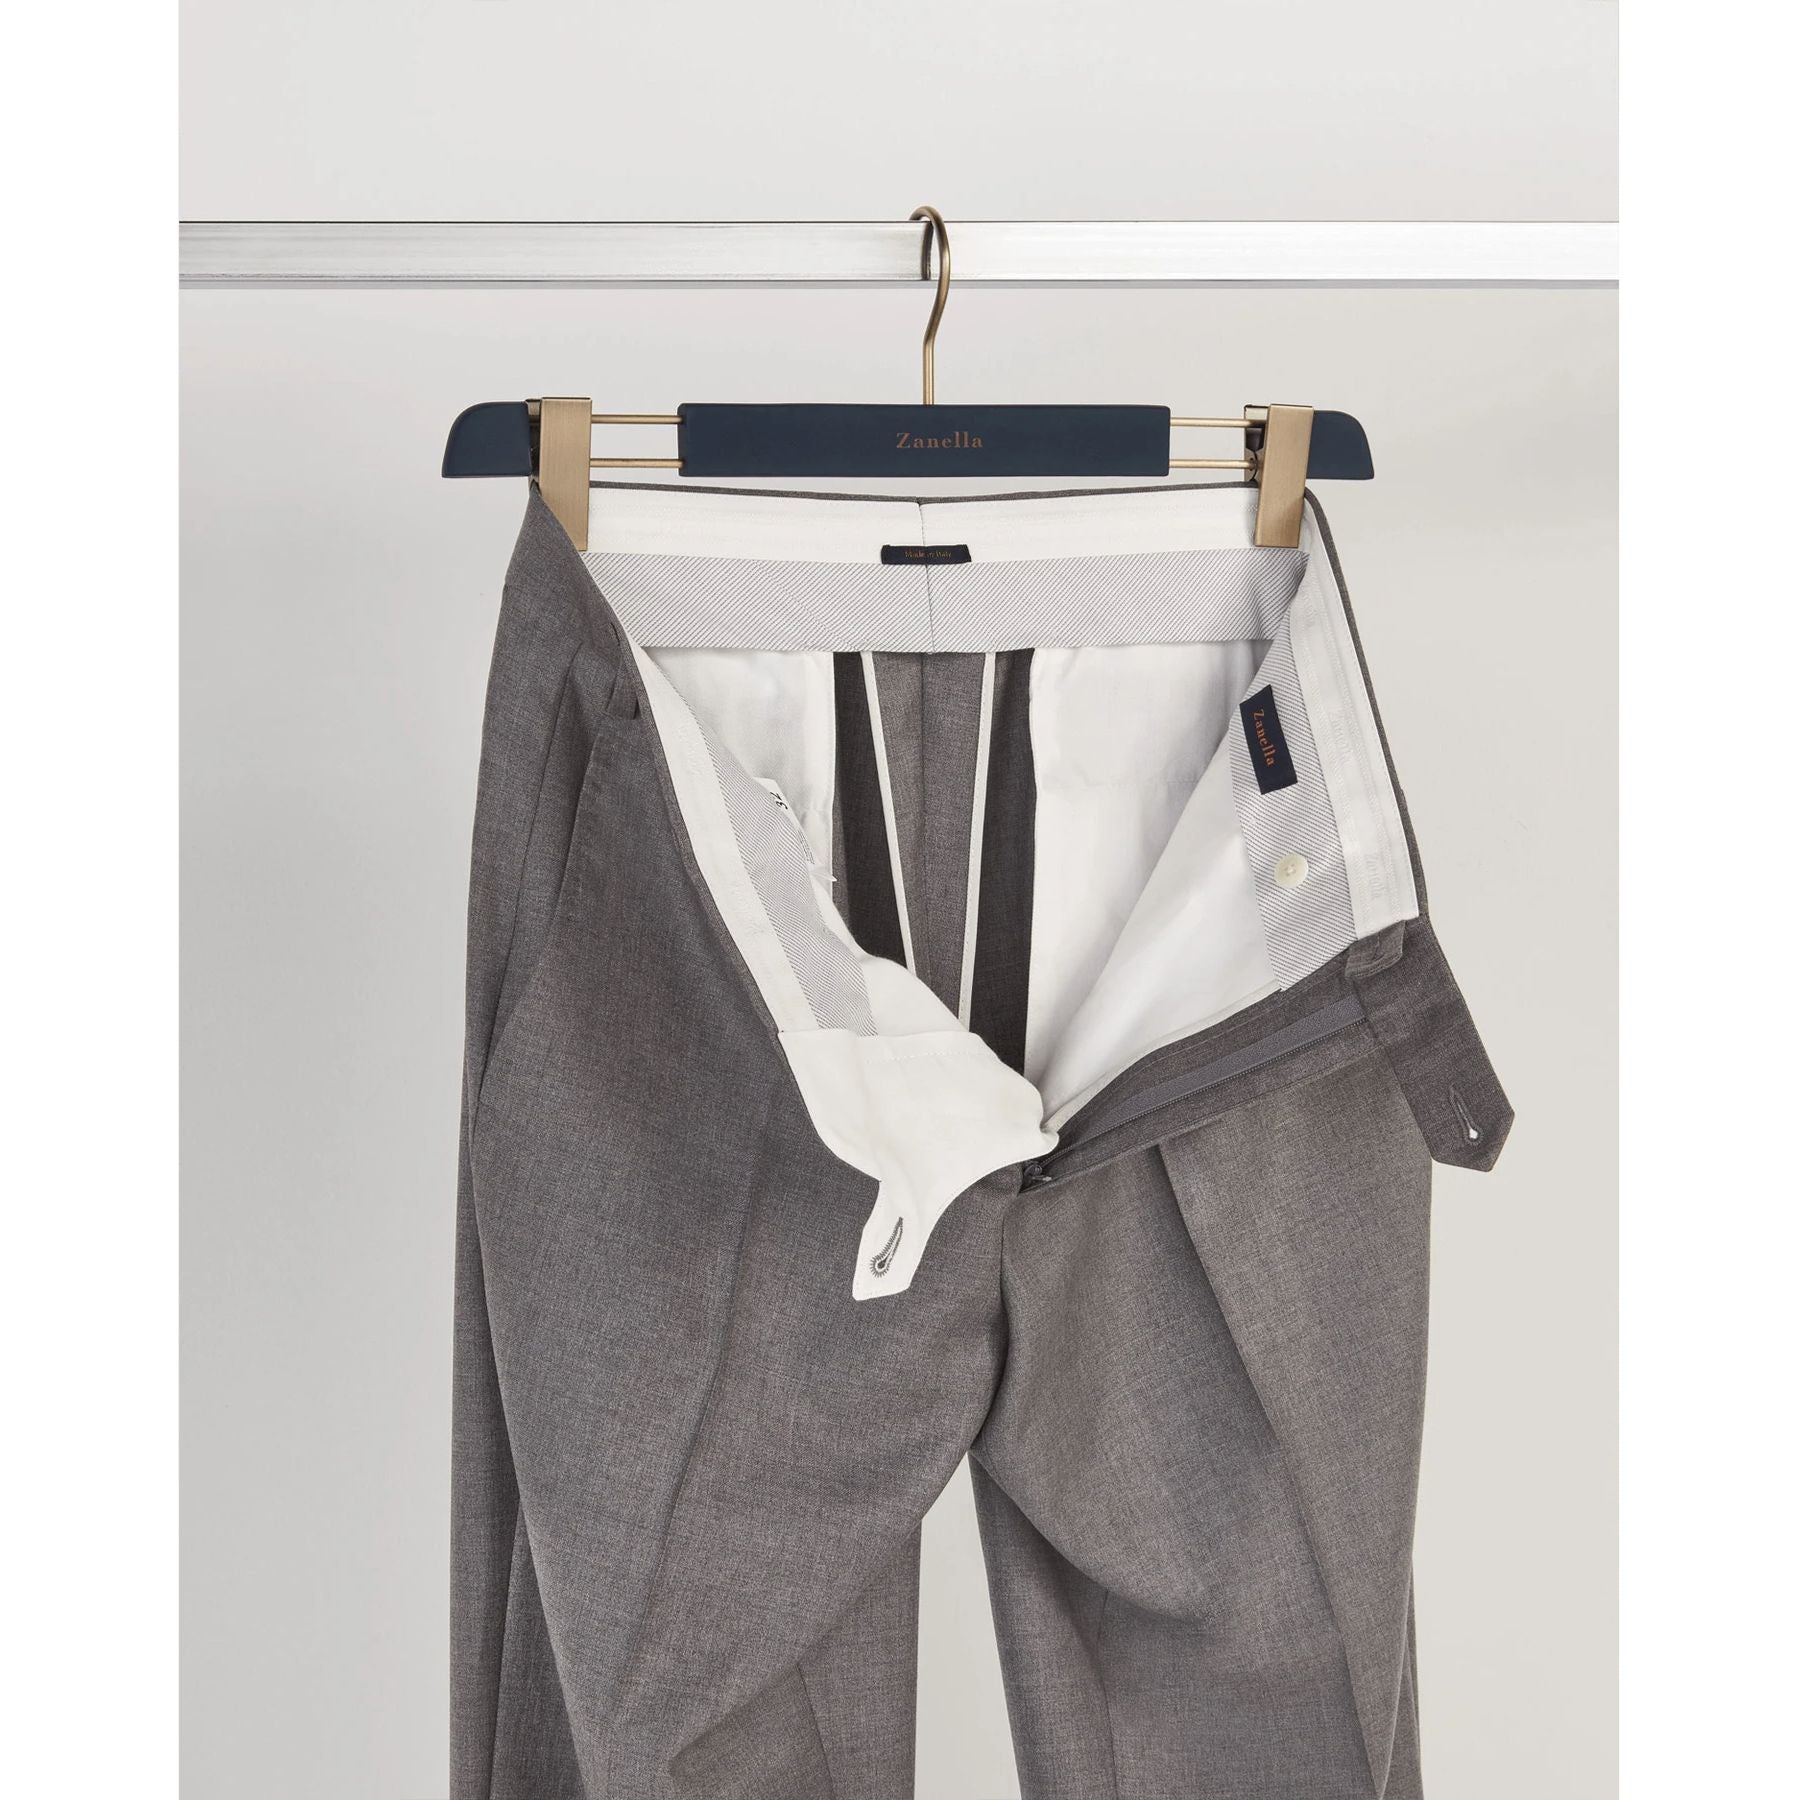 Devon Flat Front Super 120s Wool Serge Trouser in Light Grey (Modern Full Fit) by Zanella